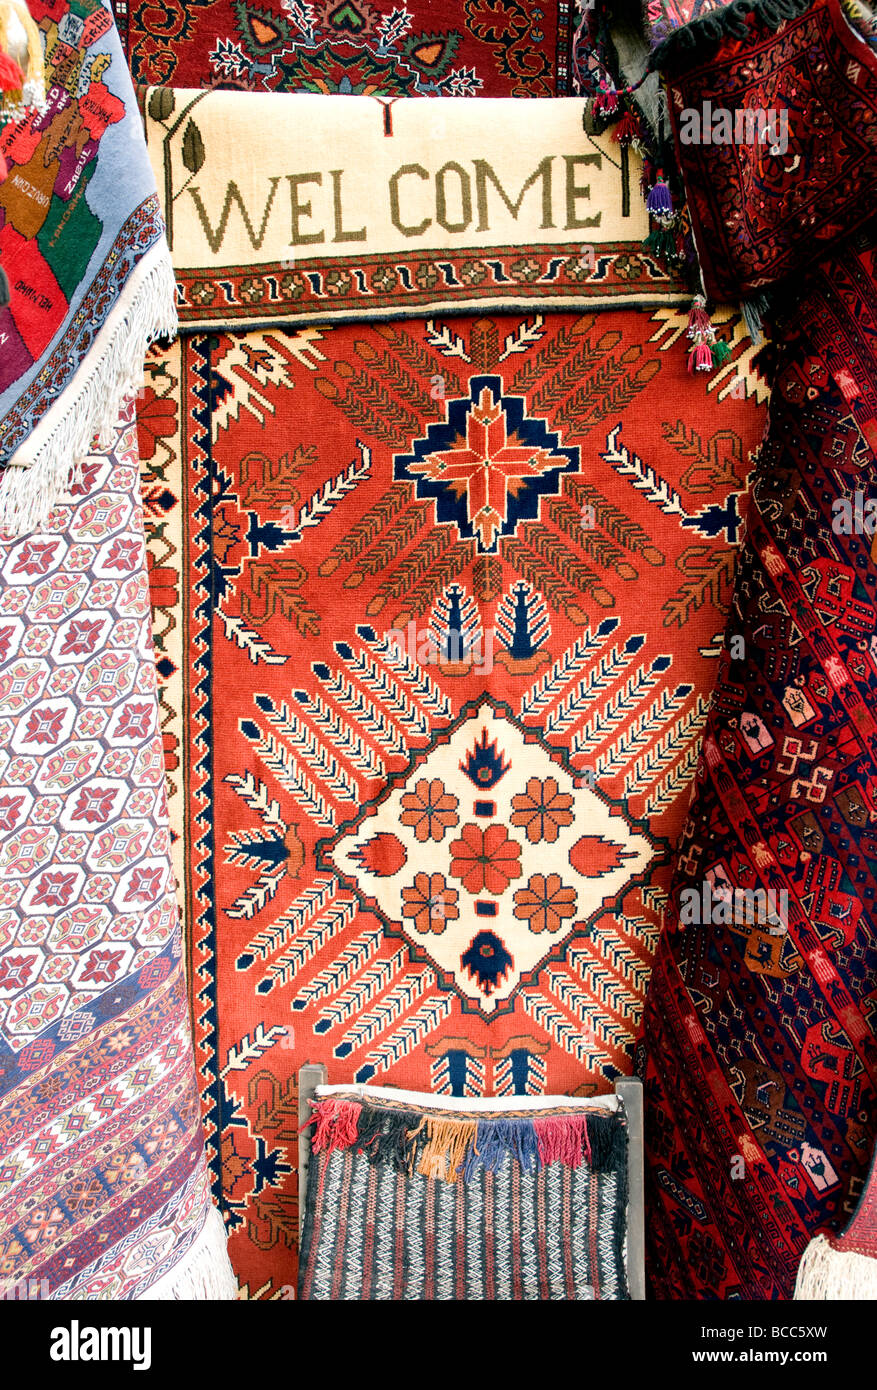 Un motivo di benvenuto ha lavorato in un tappeto in un negozio di tappeti a Kabul, Afghanistan è lunga e rinomata per la sua alta qualità di tappeti Foto Stock